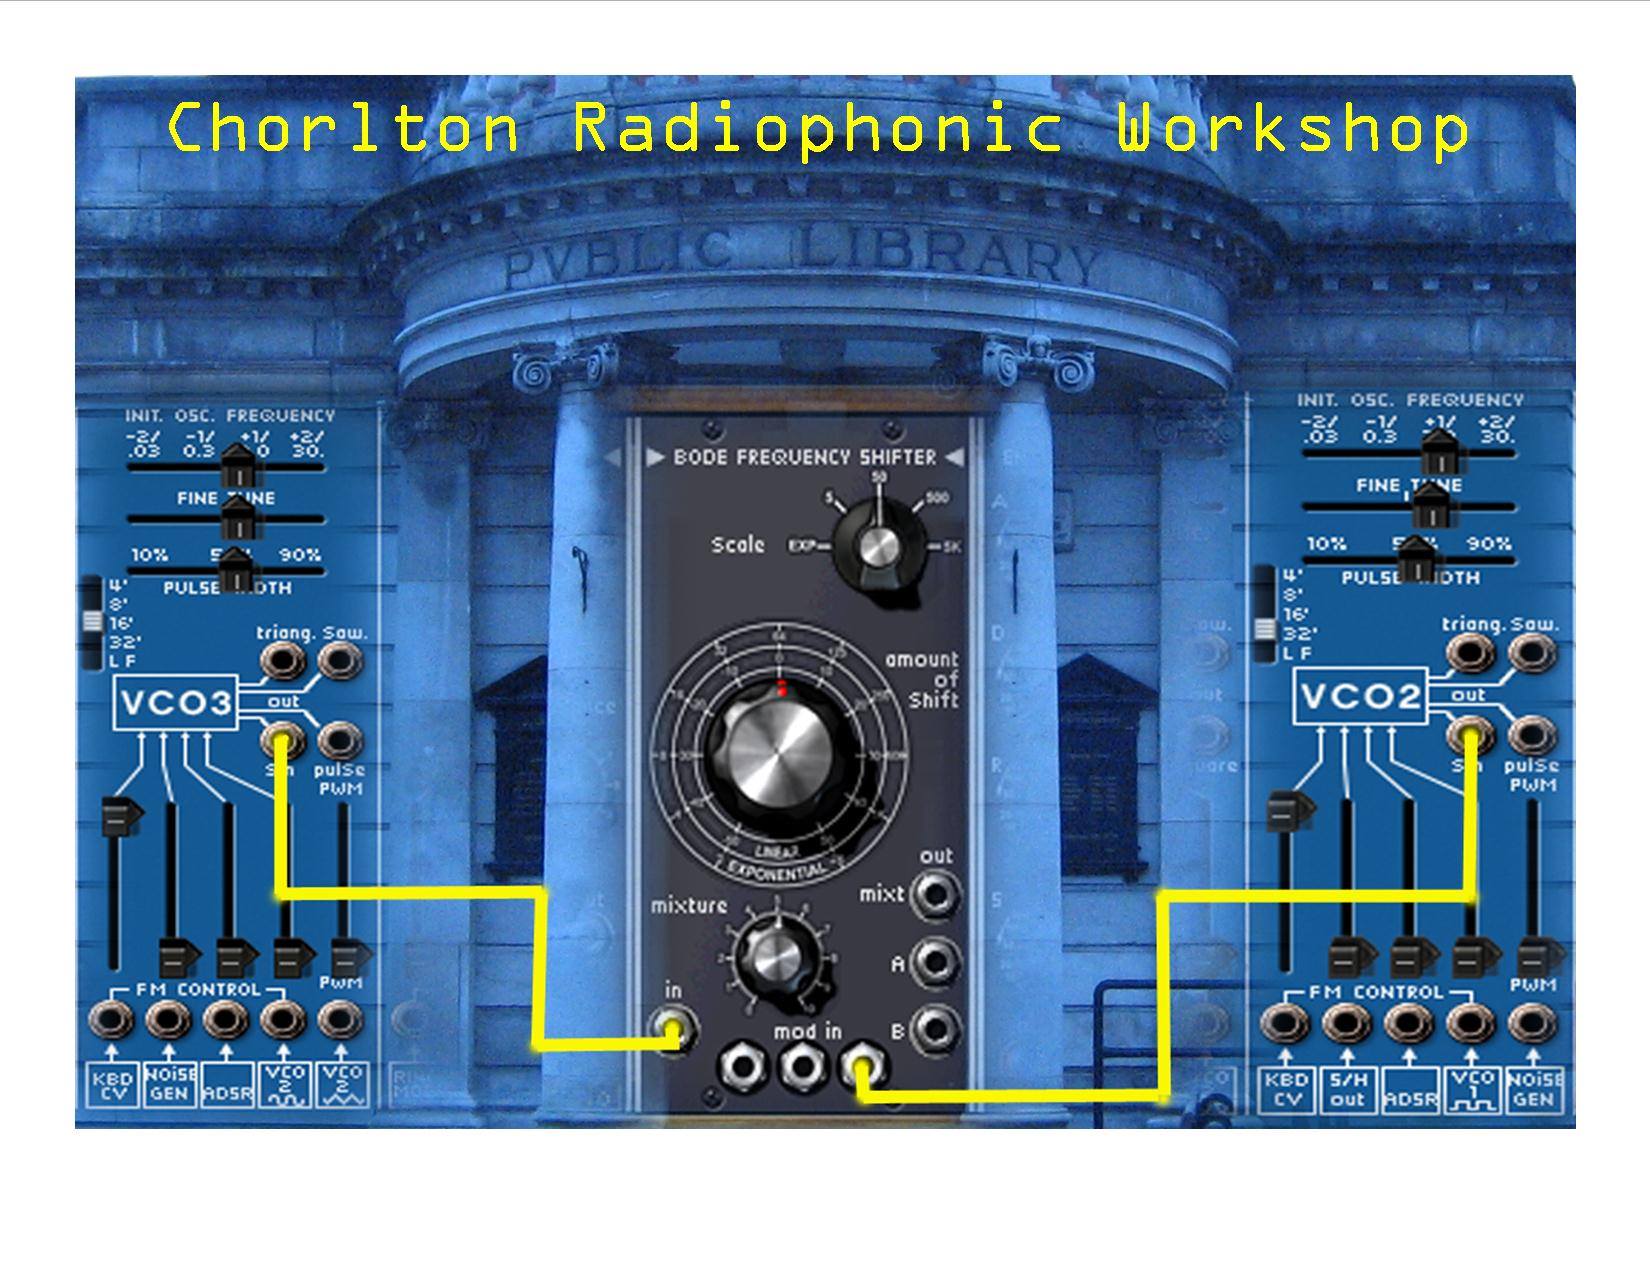 The Chorlton Radiophonic Workshop – 10 May 2018